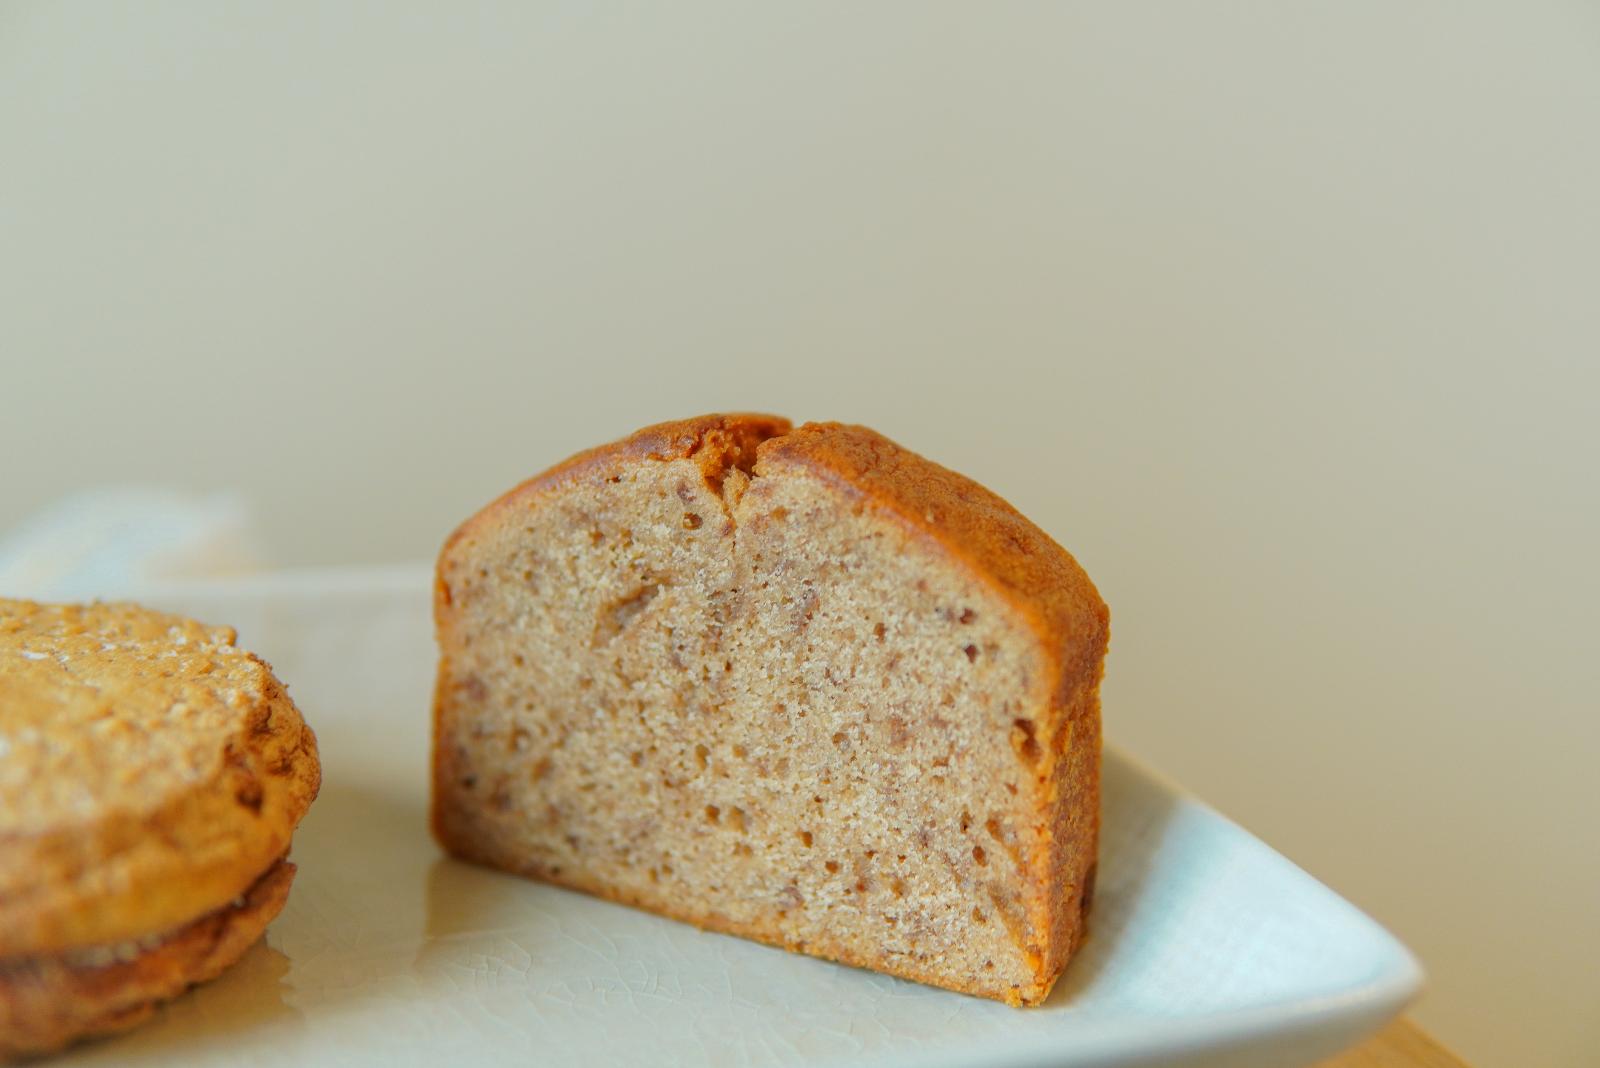 ☆【美食】二月森手工喜餅。台灣在地食材融合法式點心的藝術喜餅禮盒